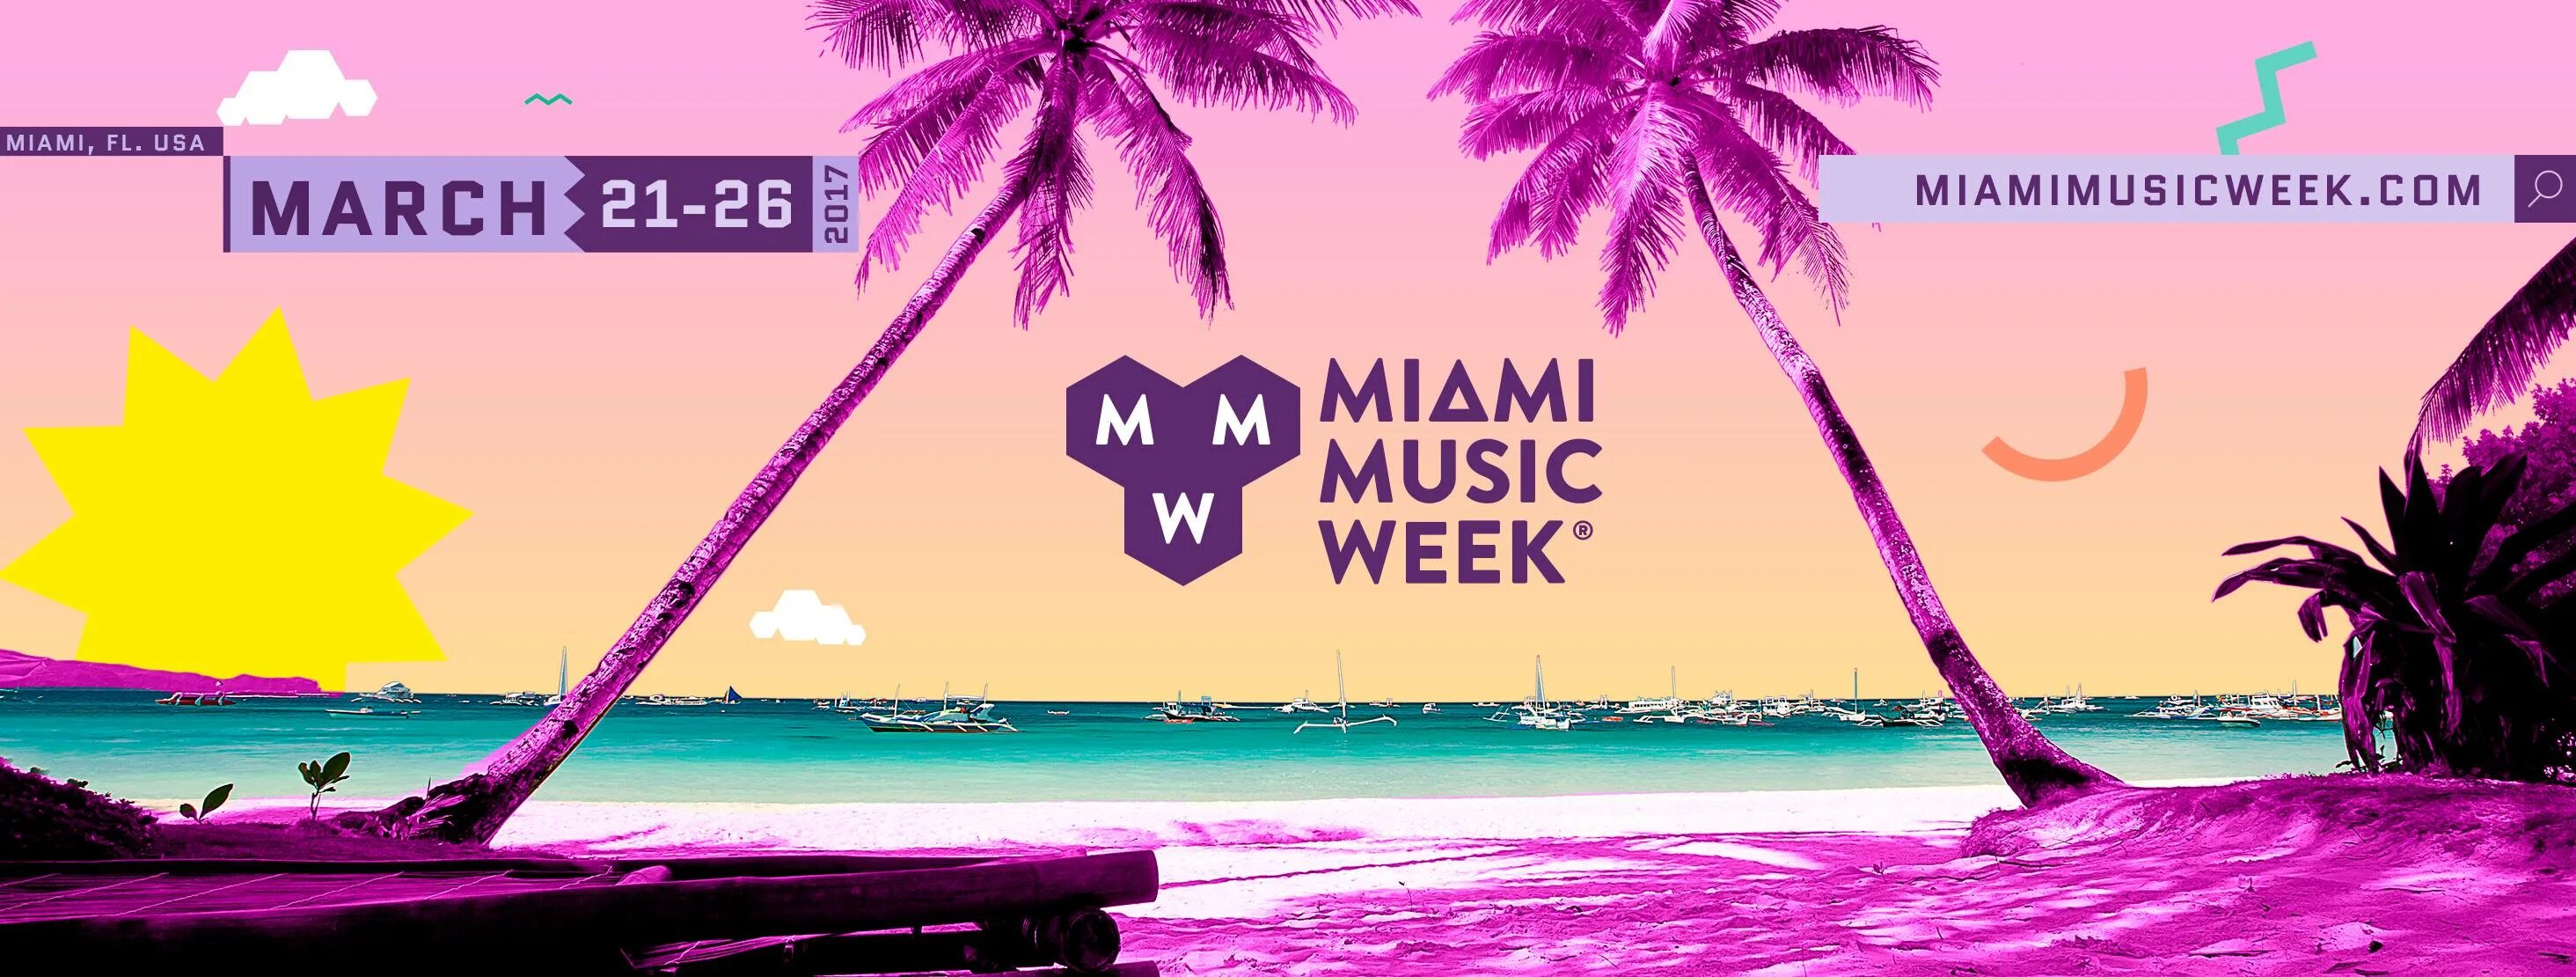 Песни про маями. Miami Music. Miami Music week. Майами Постер. Плакат Майами.